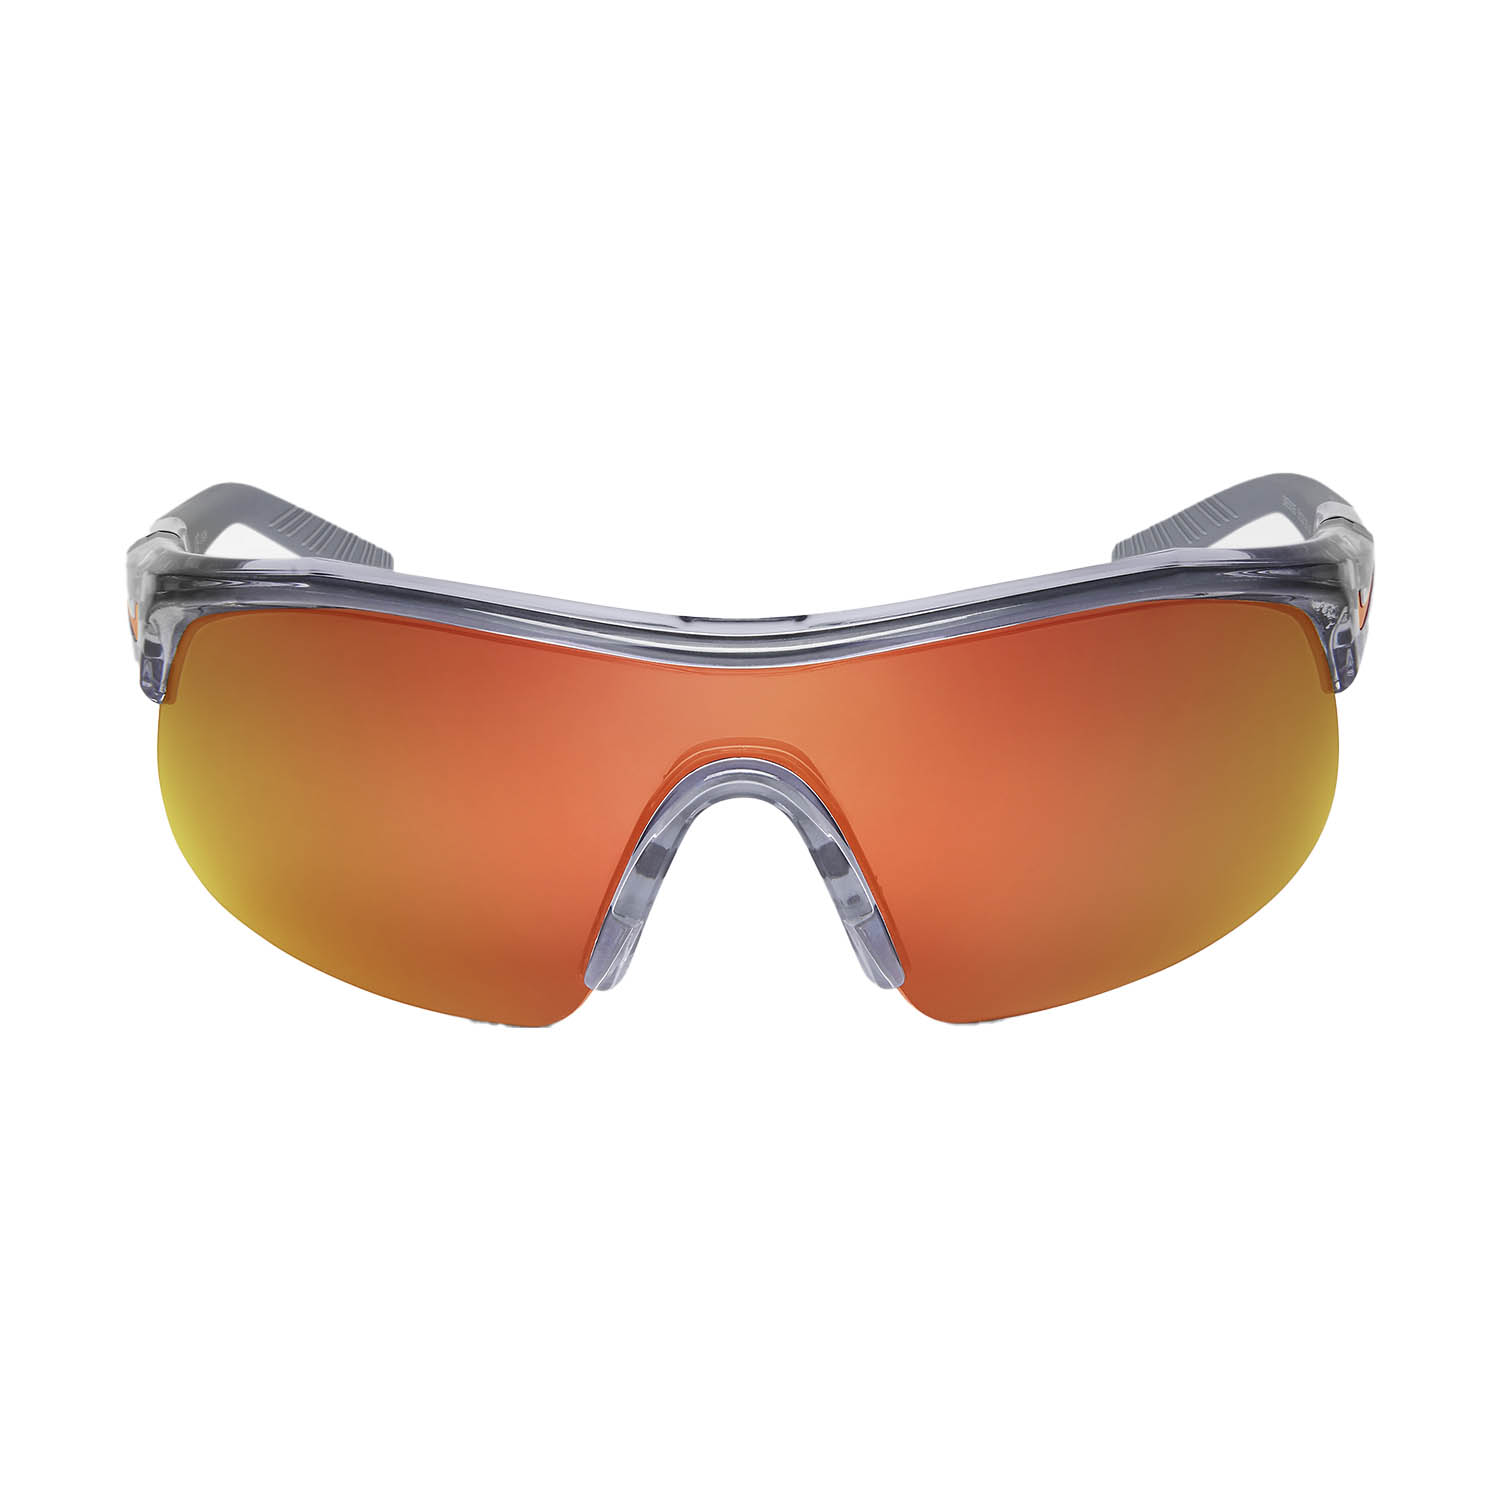 Nike Show X1 Sunglasses - Shiny Wolf Grey/Orange Mirror